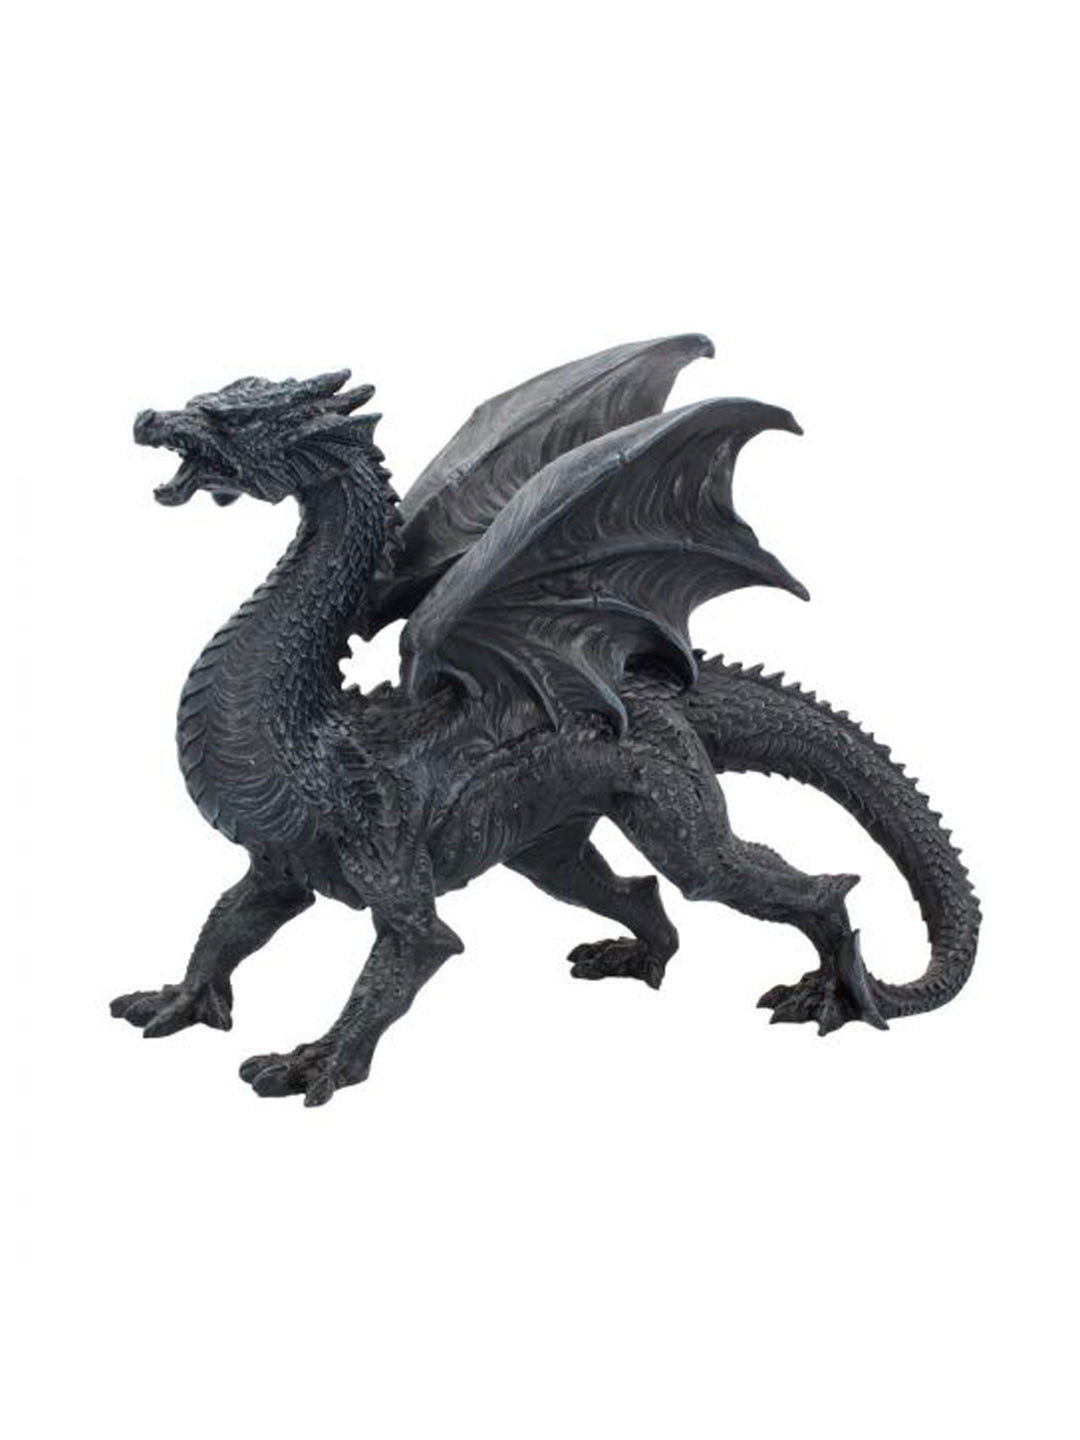 Dragon Watcher, Black Dragon